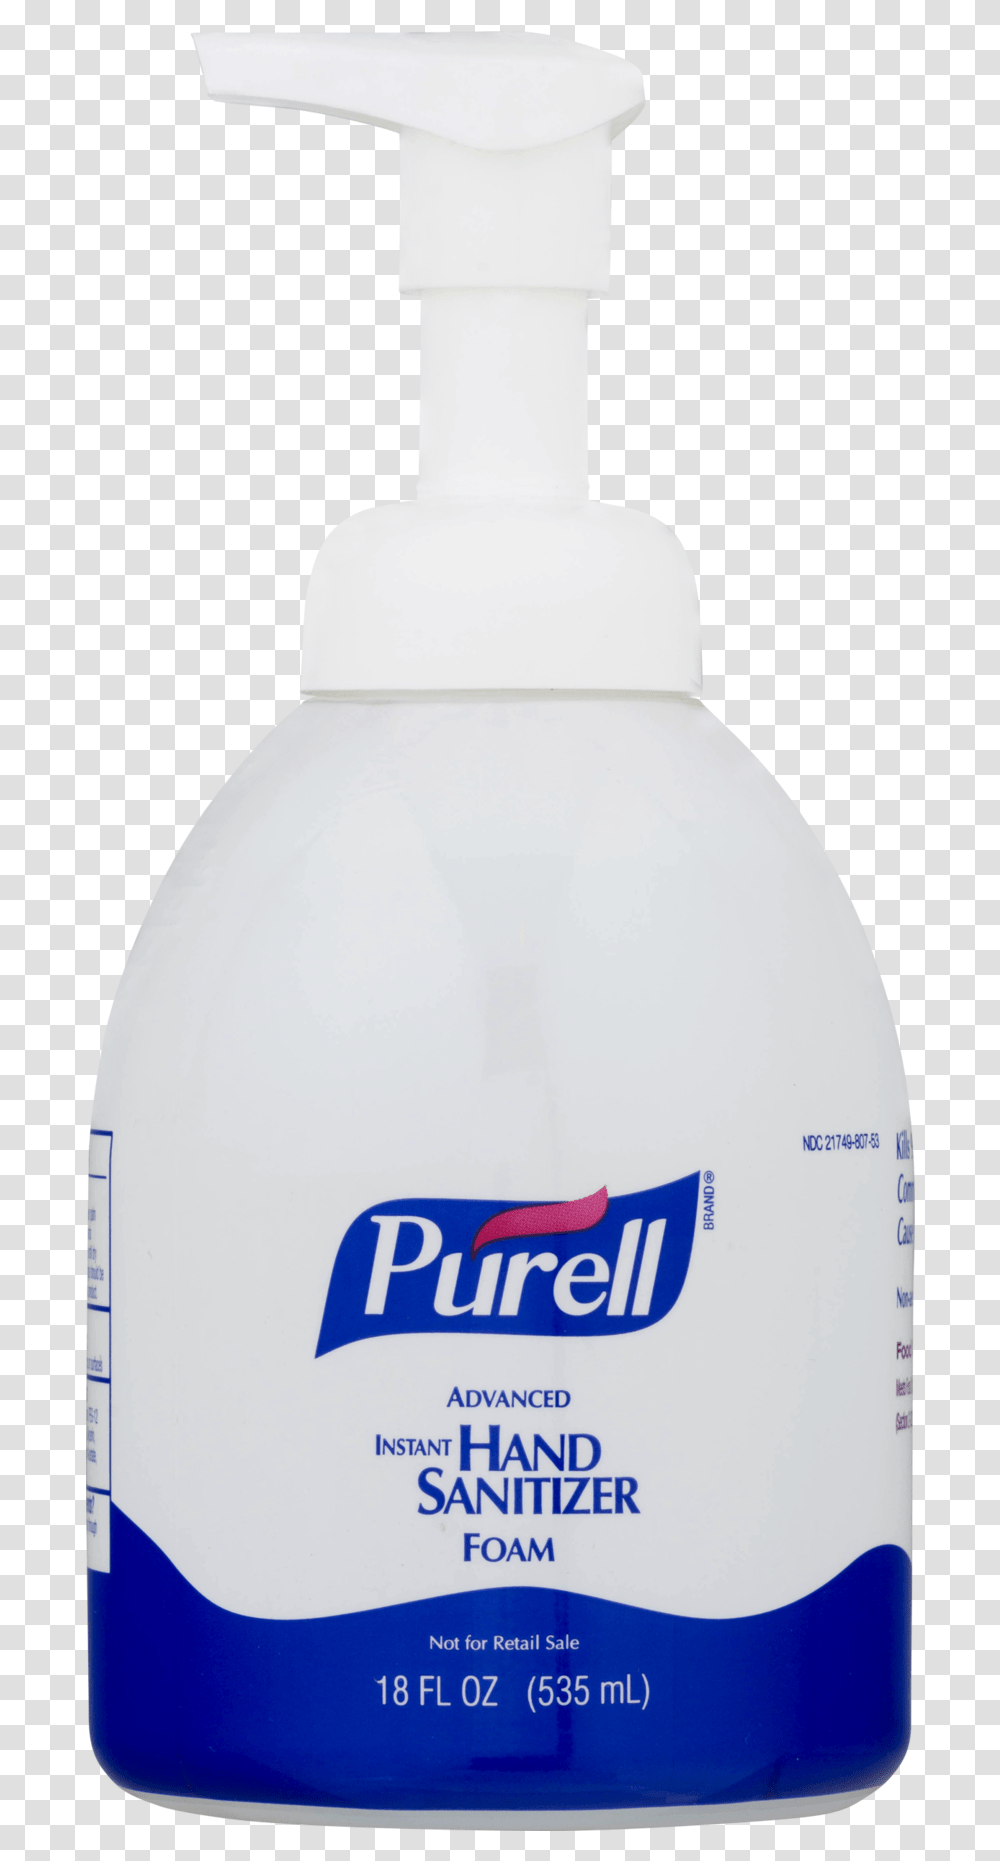 Purell Hand Sanitizer Dispenser Purell Hand Sanitizer Bottle, Snowman, Winter, Outdoors, Nature Transparent Png